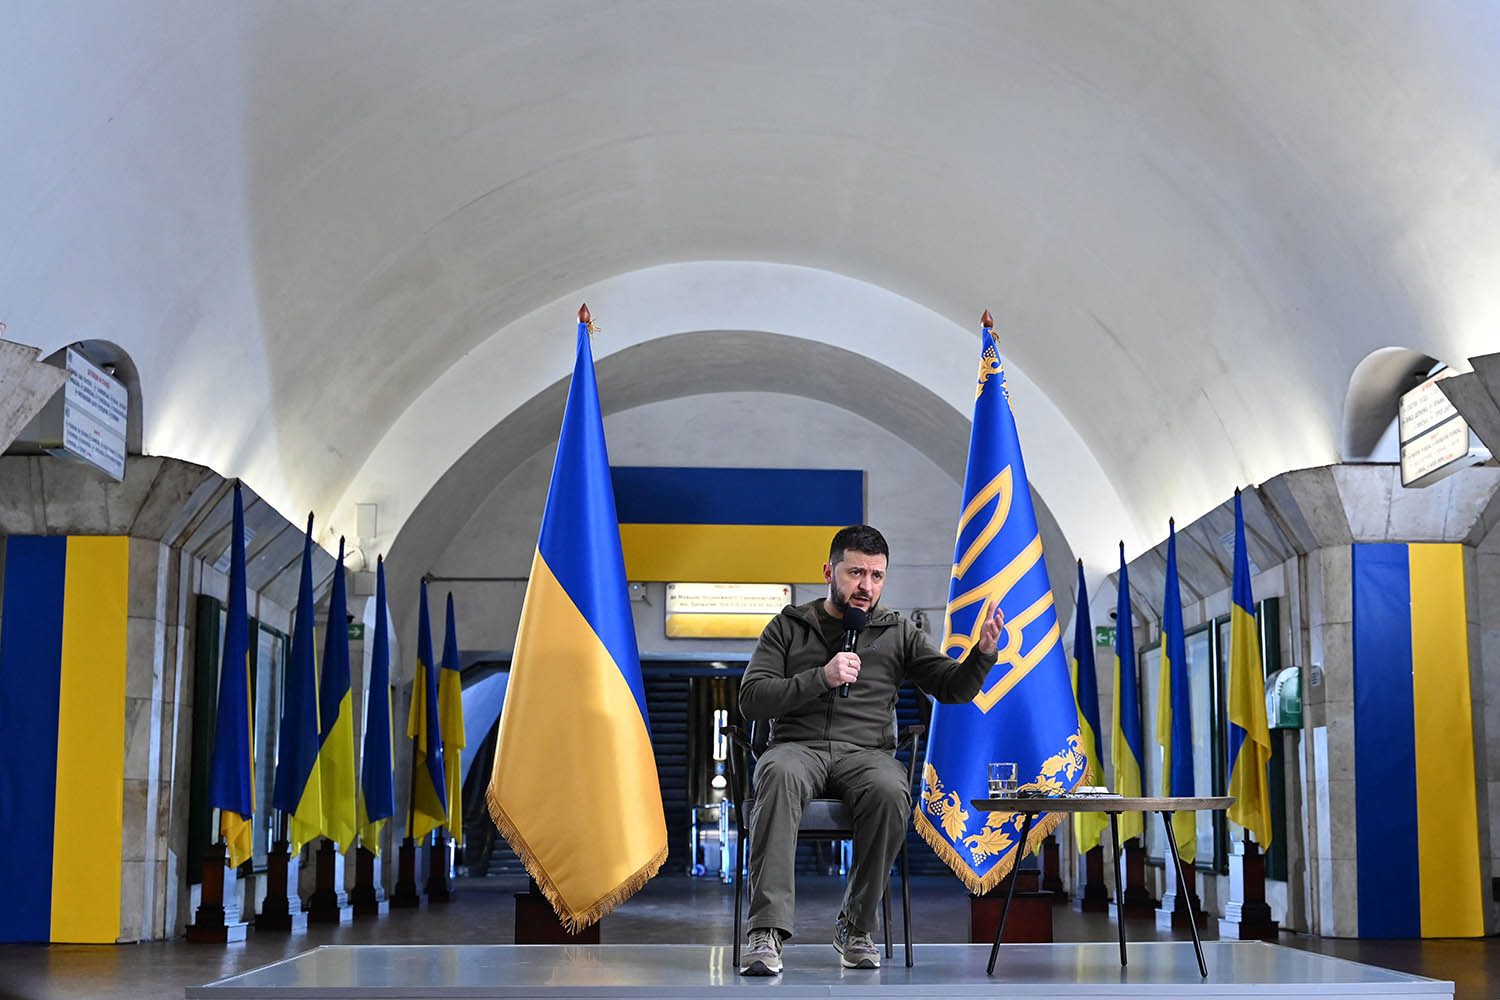 El presidente ucraniano Volodymyr Zelensky se dirige a una conferencia de prensa con los medios internacionales en una estación de metro